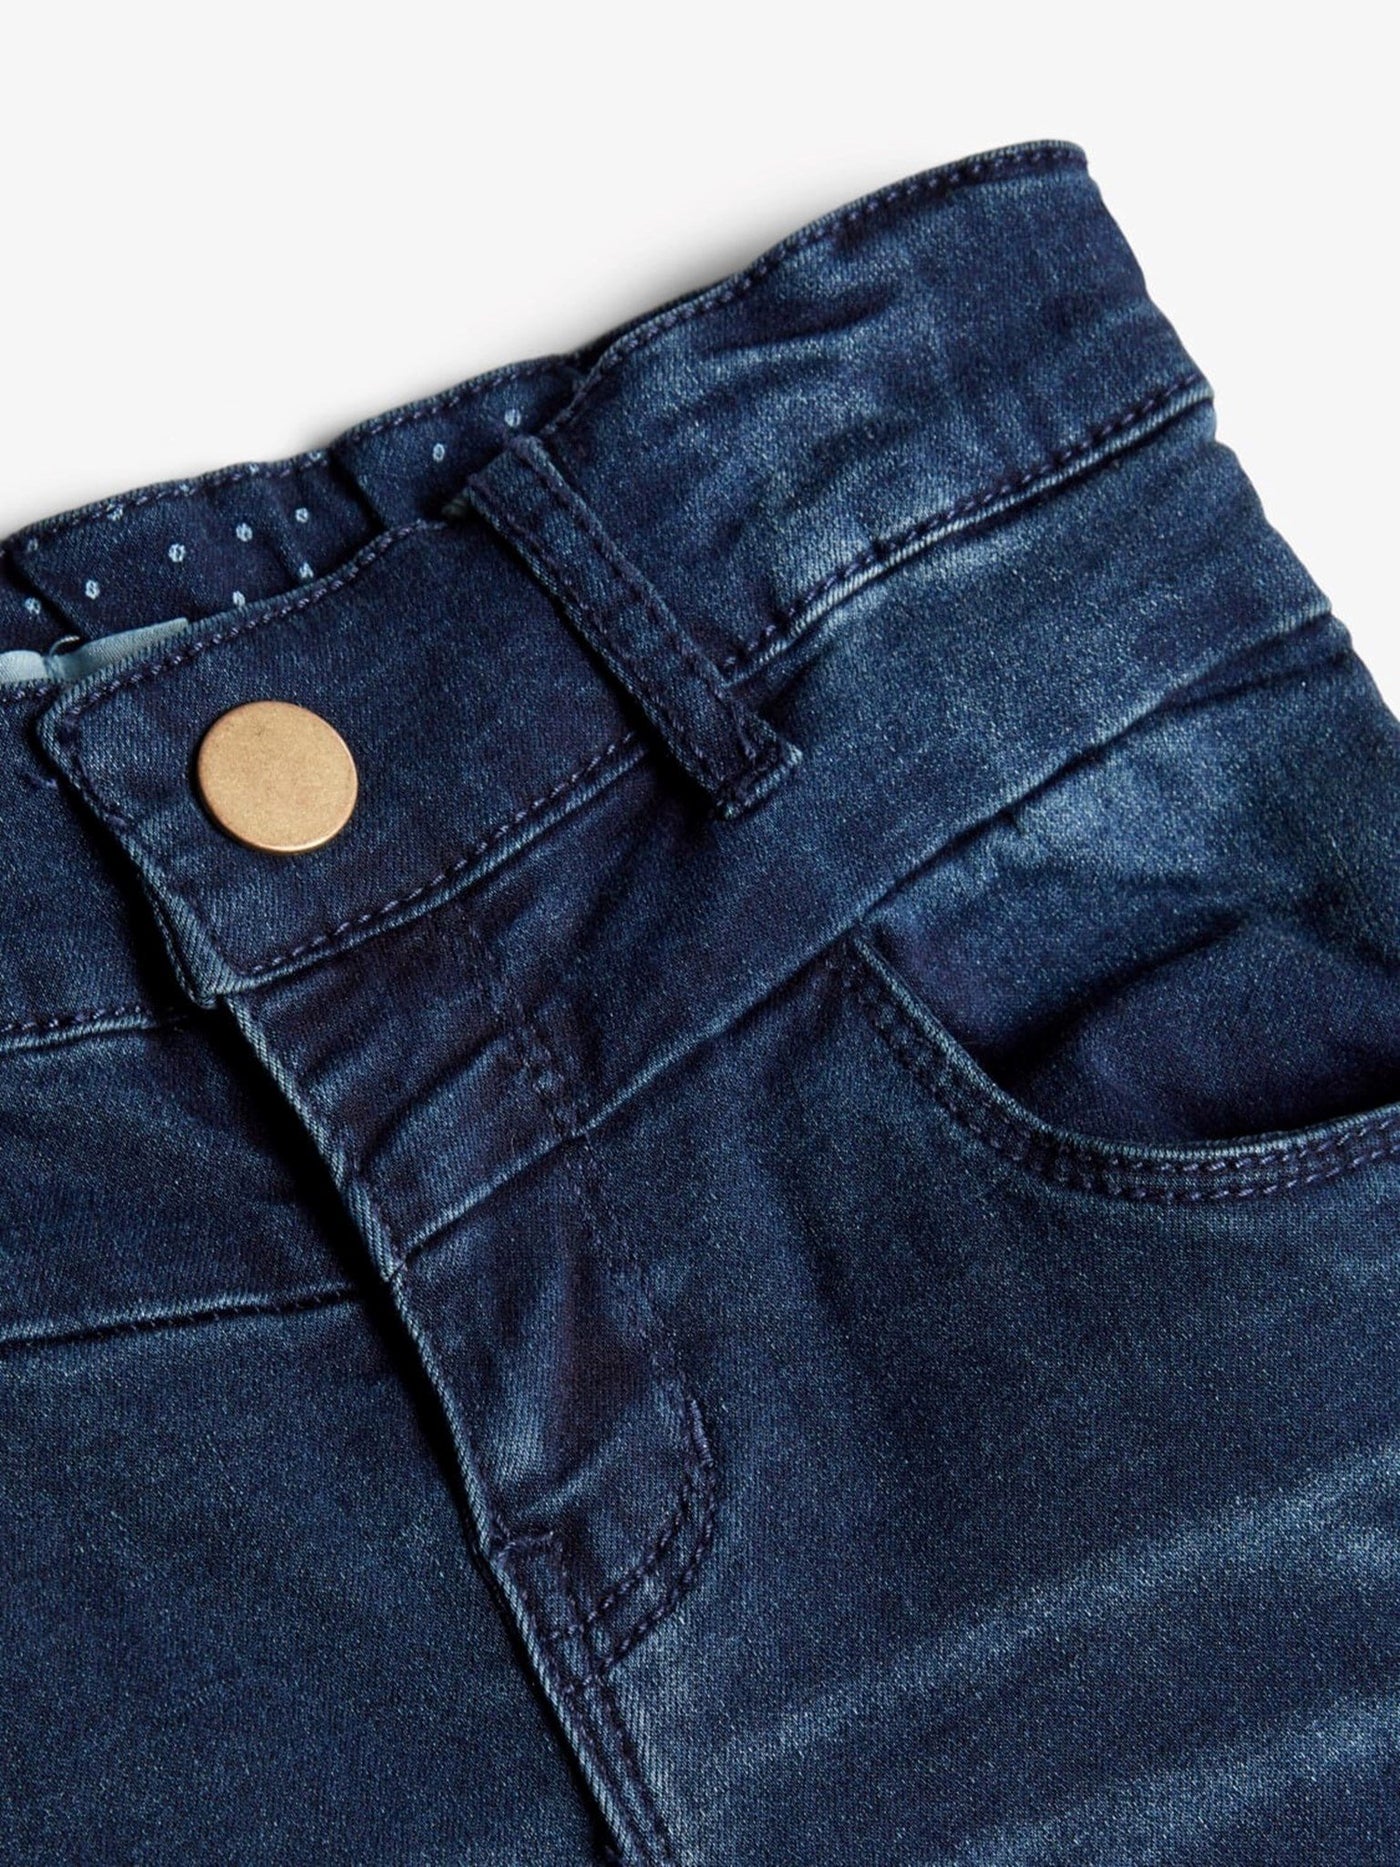 Polly skinny jeans - Mørkeblå denim - Name It - Blå 4